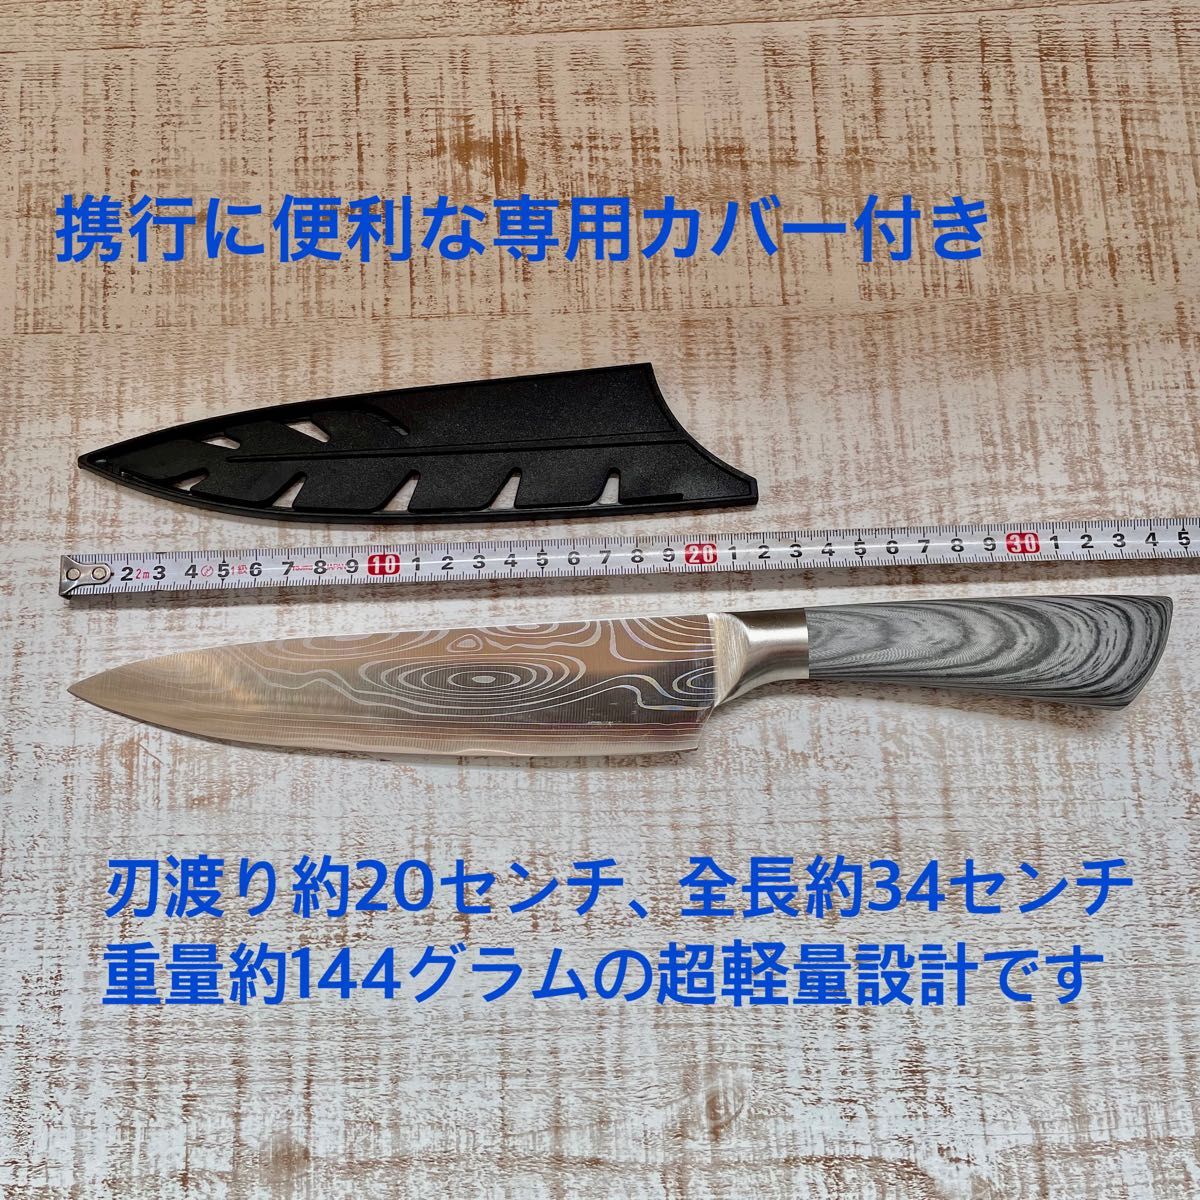 8インチ　シェフナイフ 万能包丁　7CR17 高炭素ステンレス鋼　ダマスカス模様　牛刀